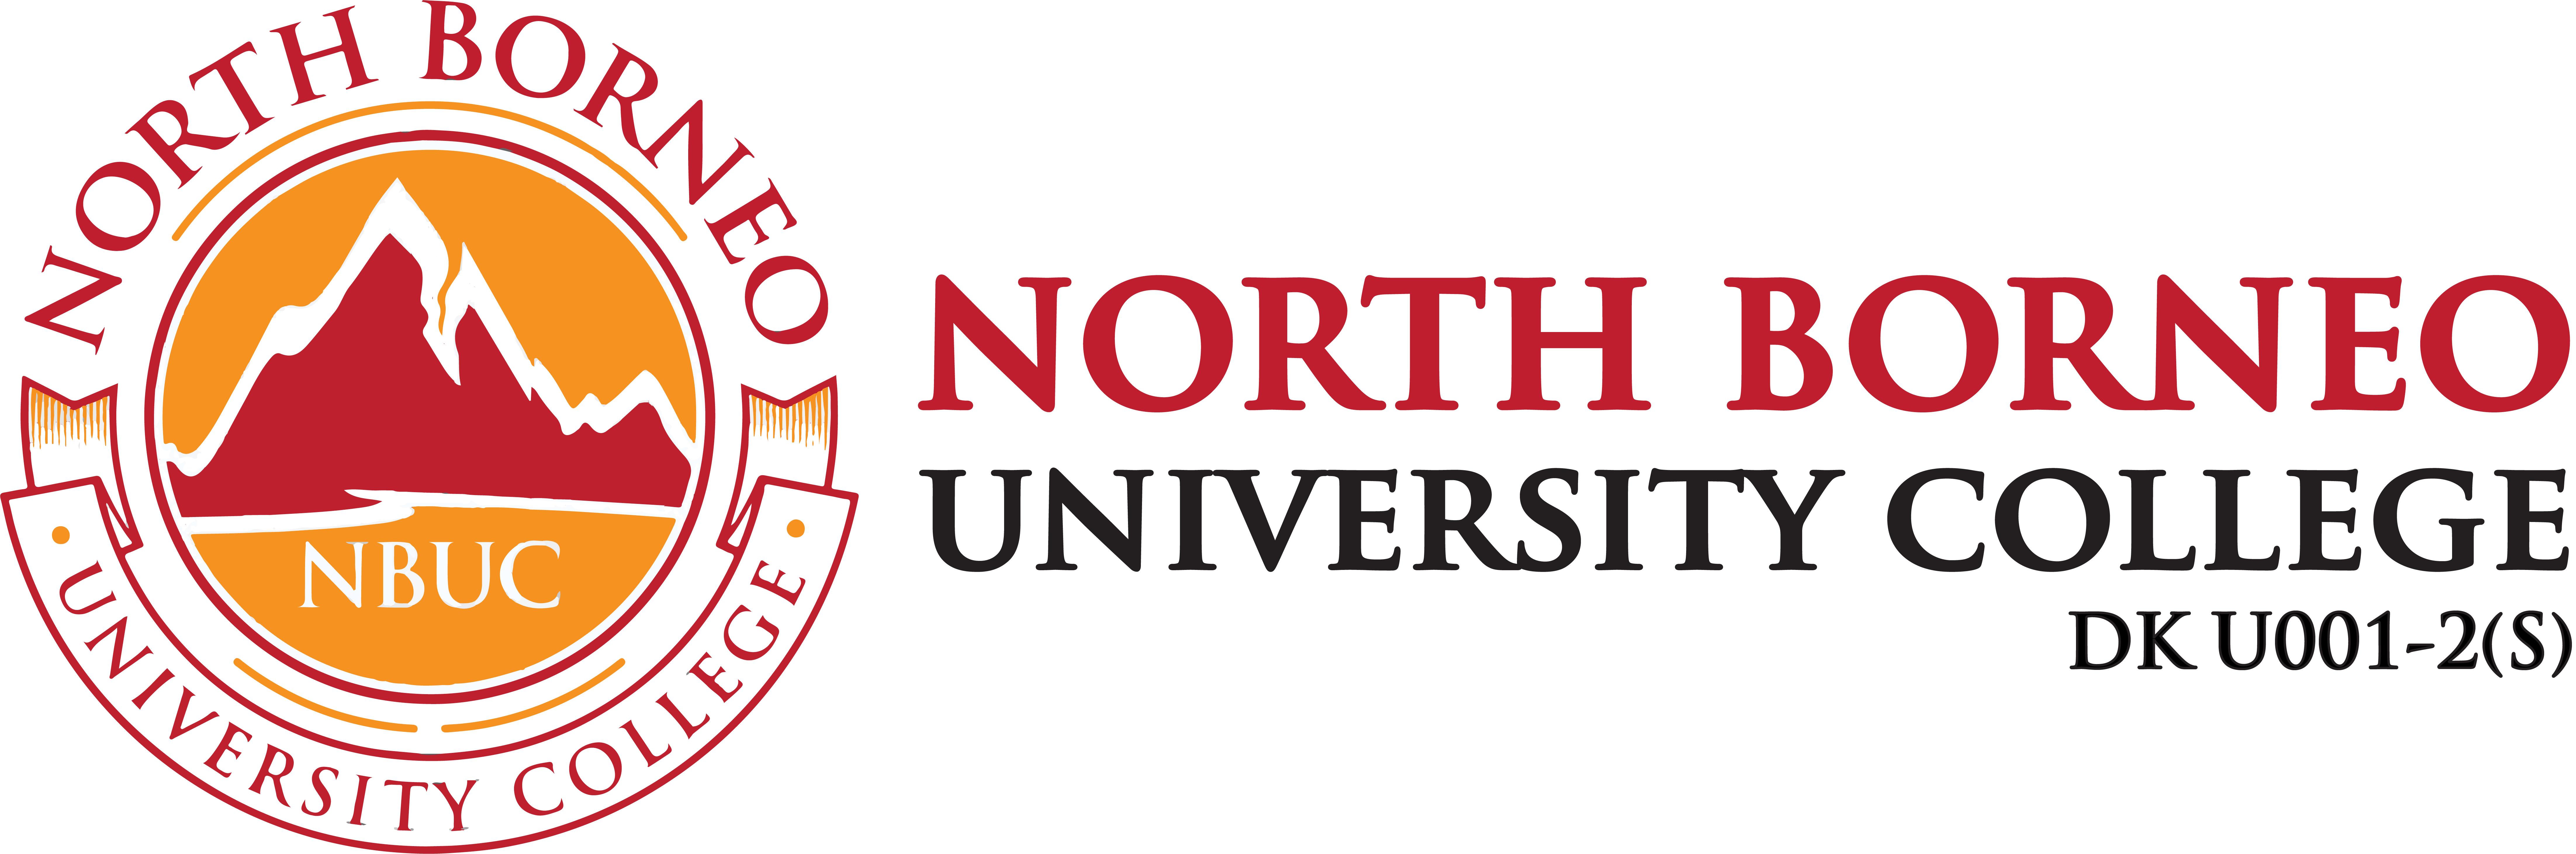 North Borneo University College - NBUC